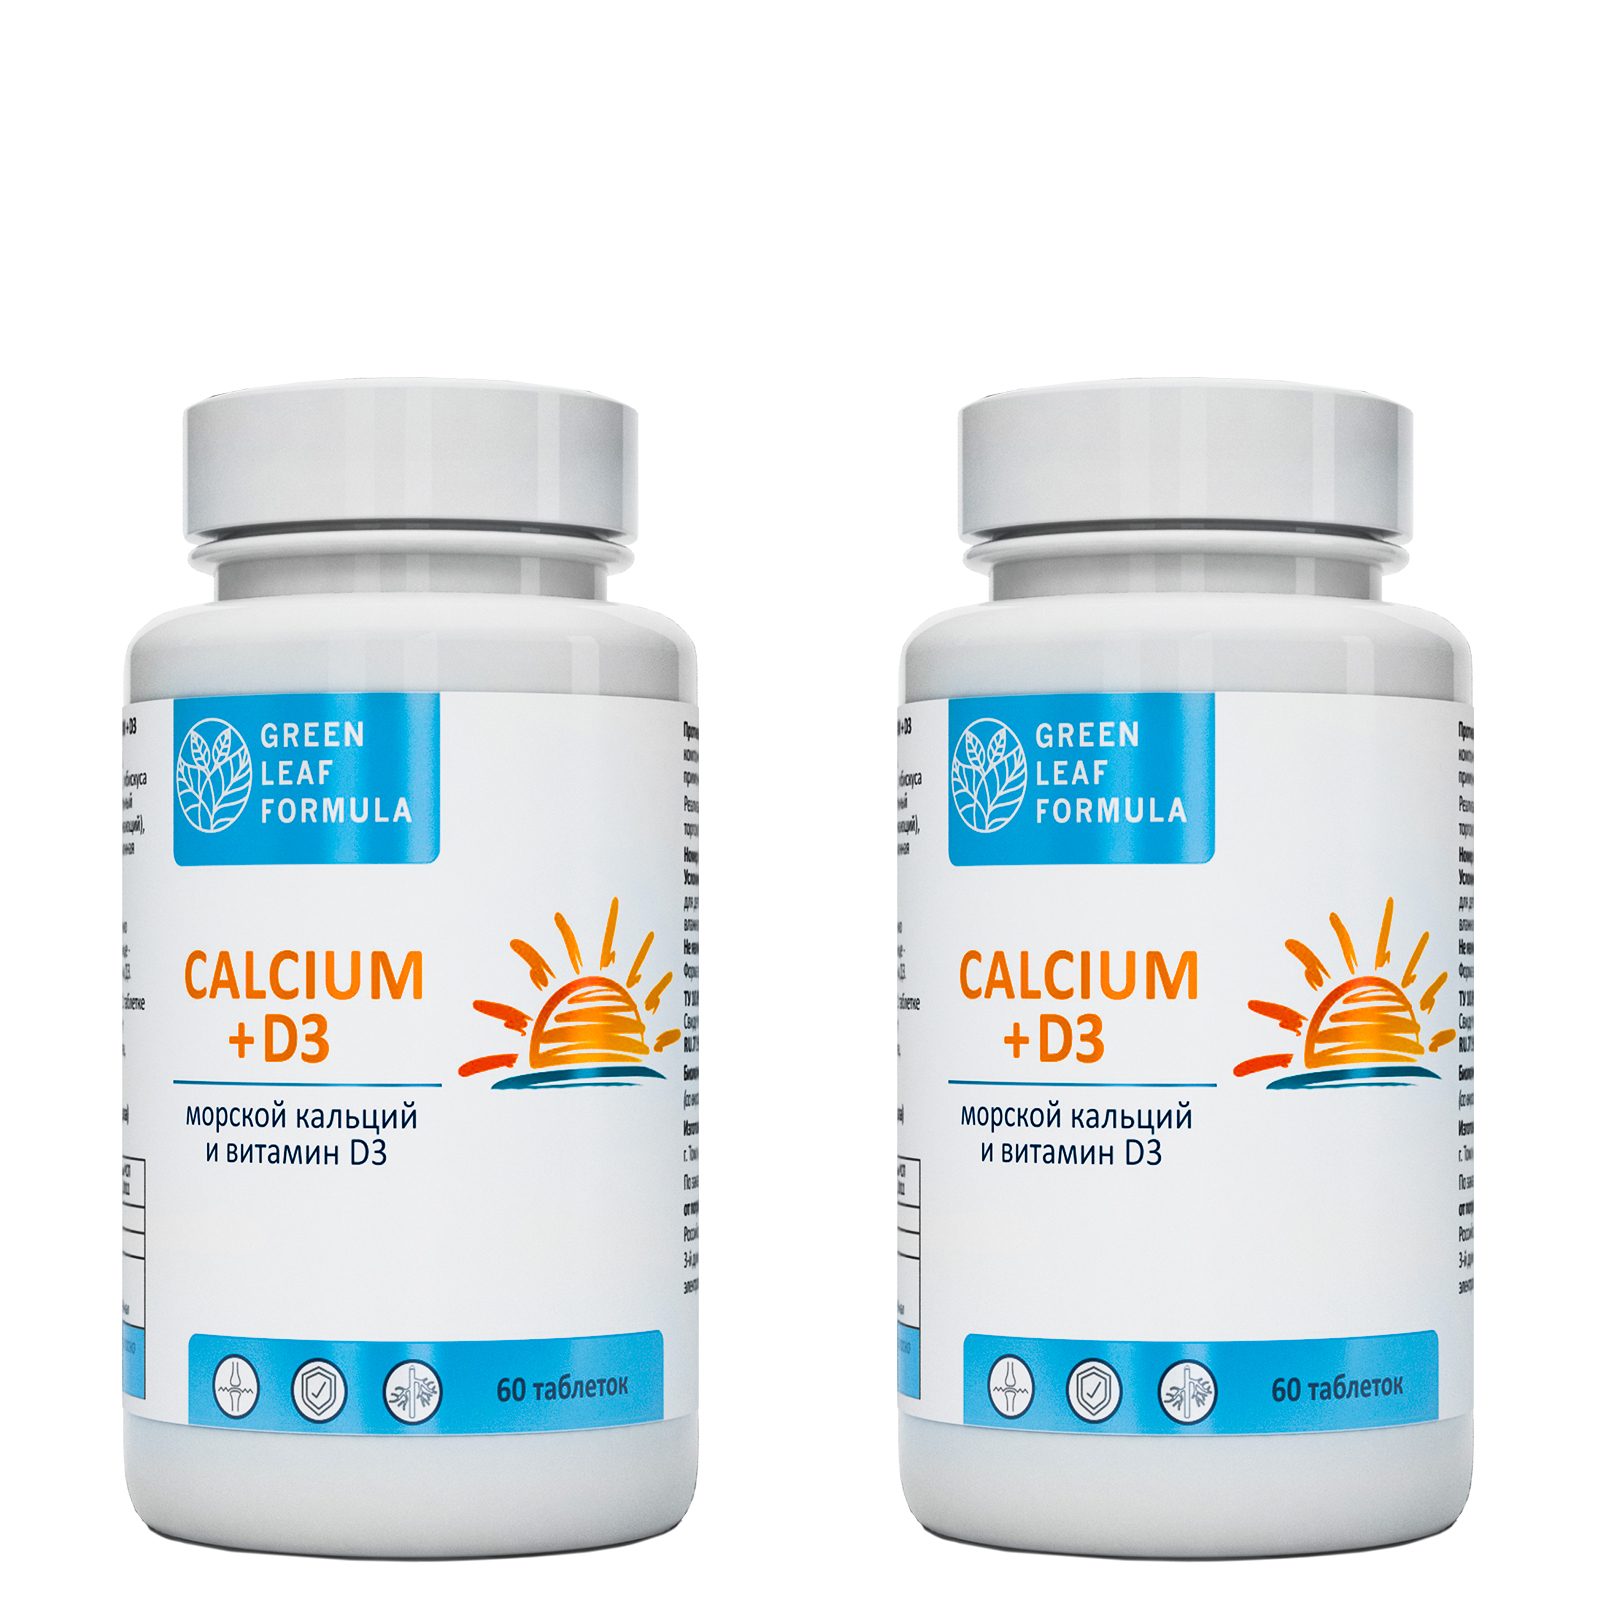 Calcium D3 Кальций Д3 Green Leaf Formula витамины для костей и суставов 2 банки по 60 таблеток - фото 1